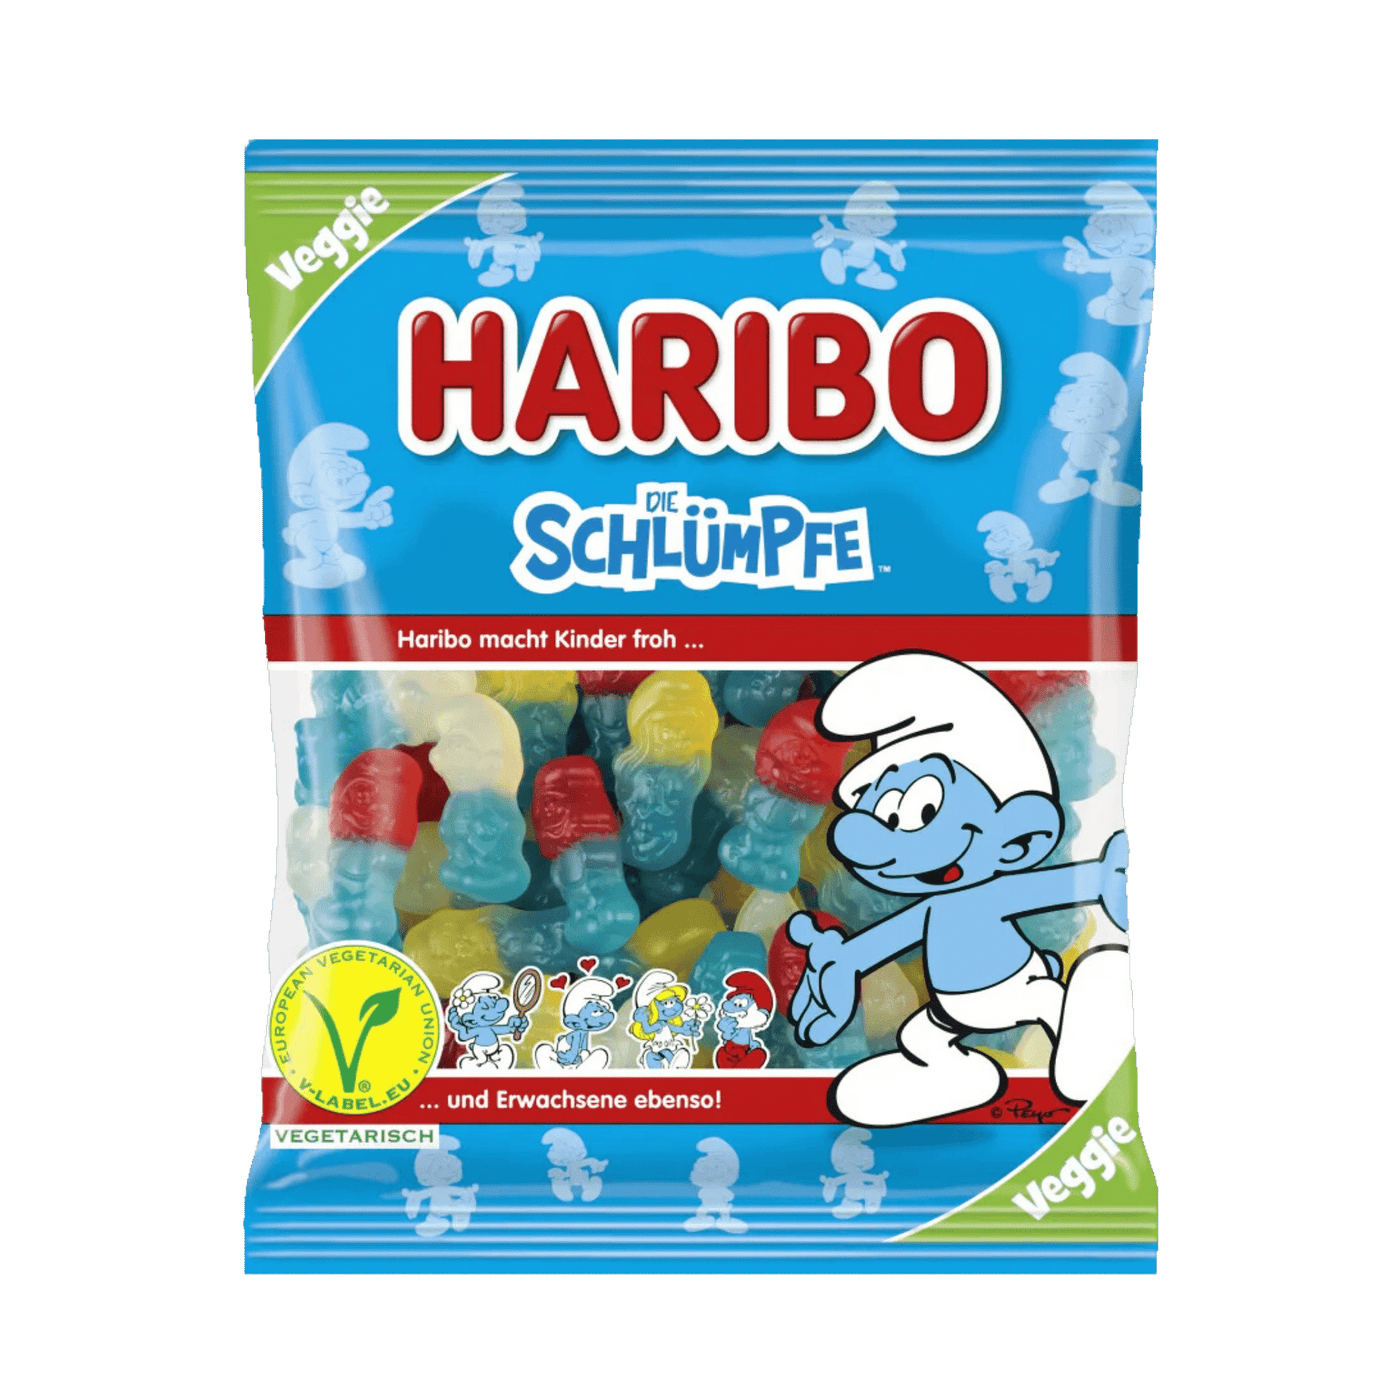 Haribo - Die Schlümpfe